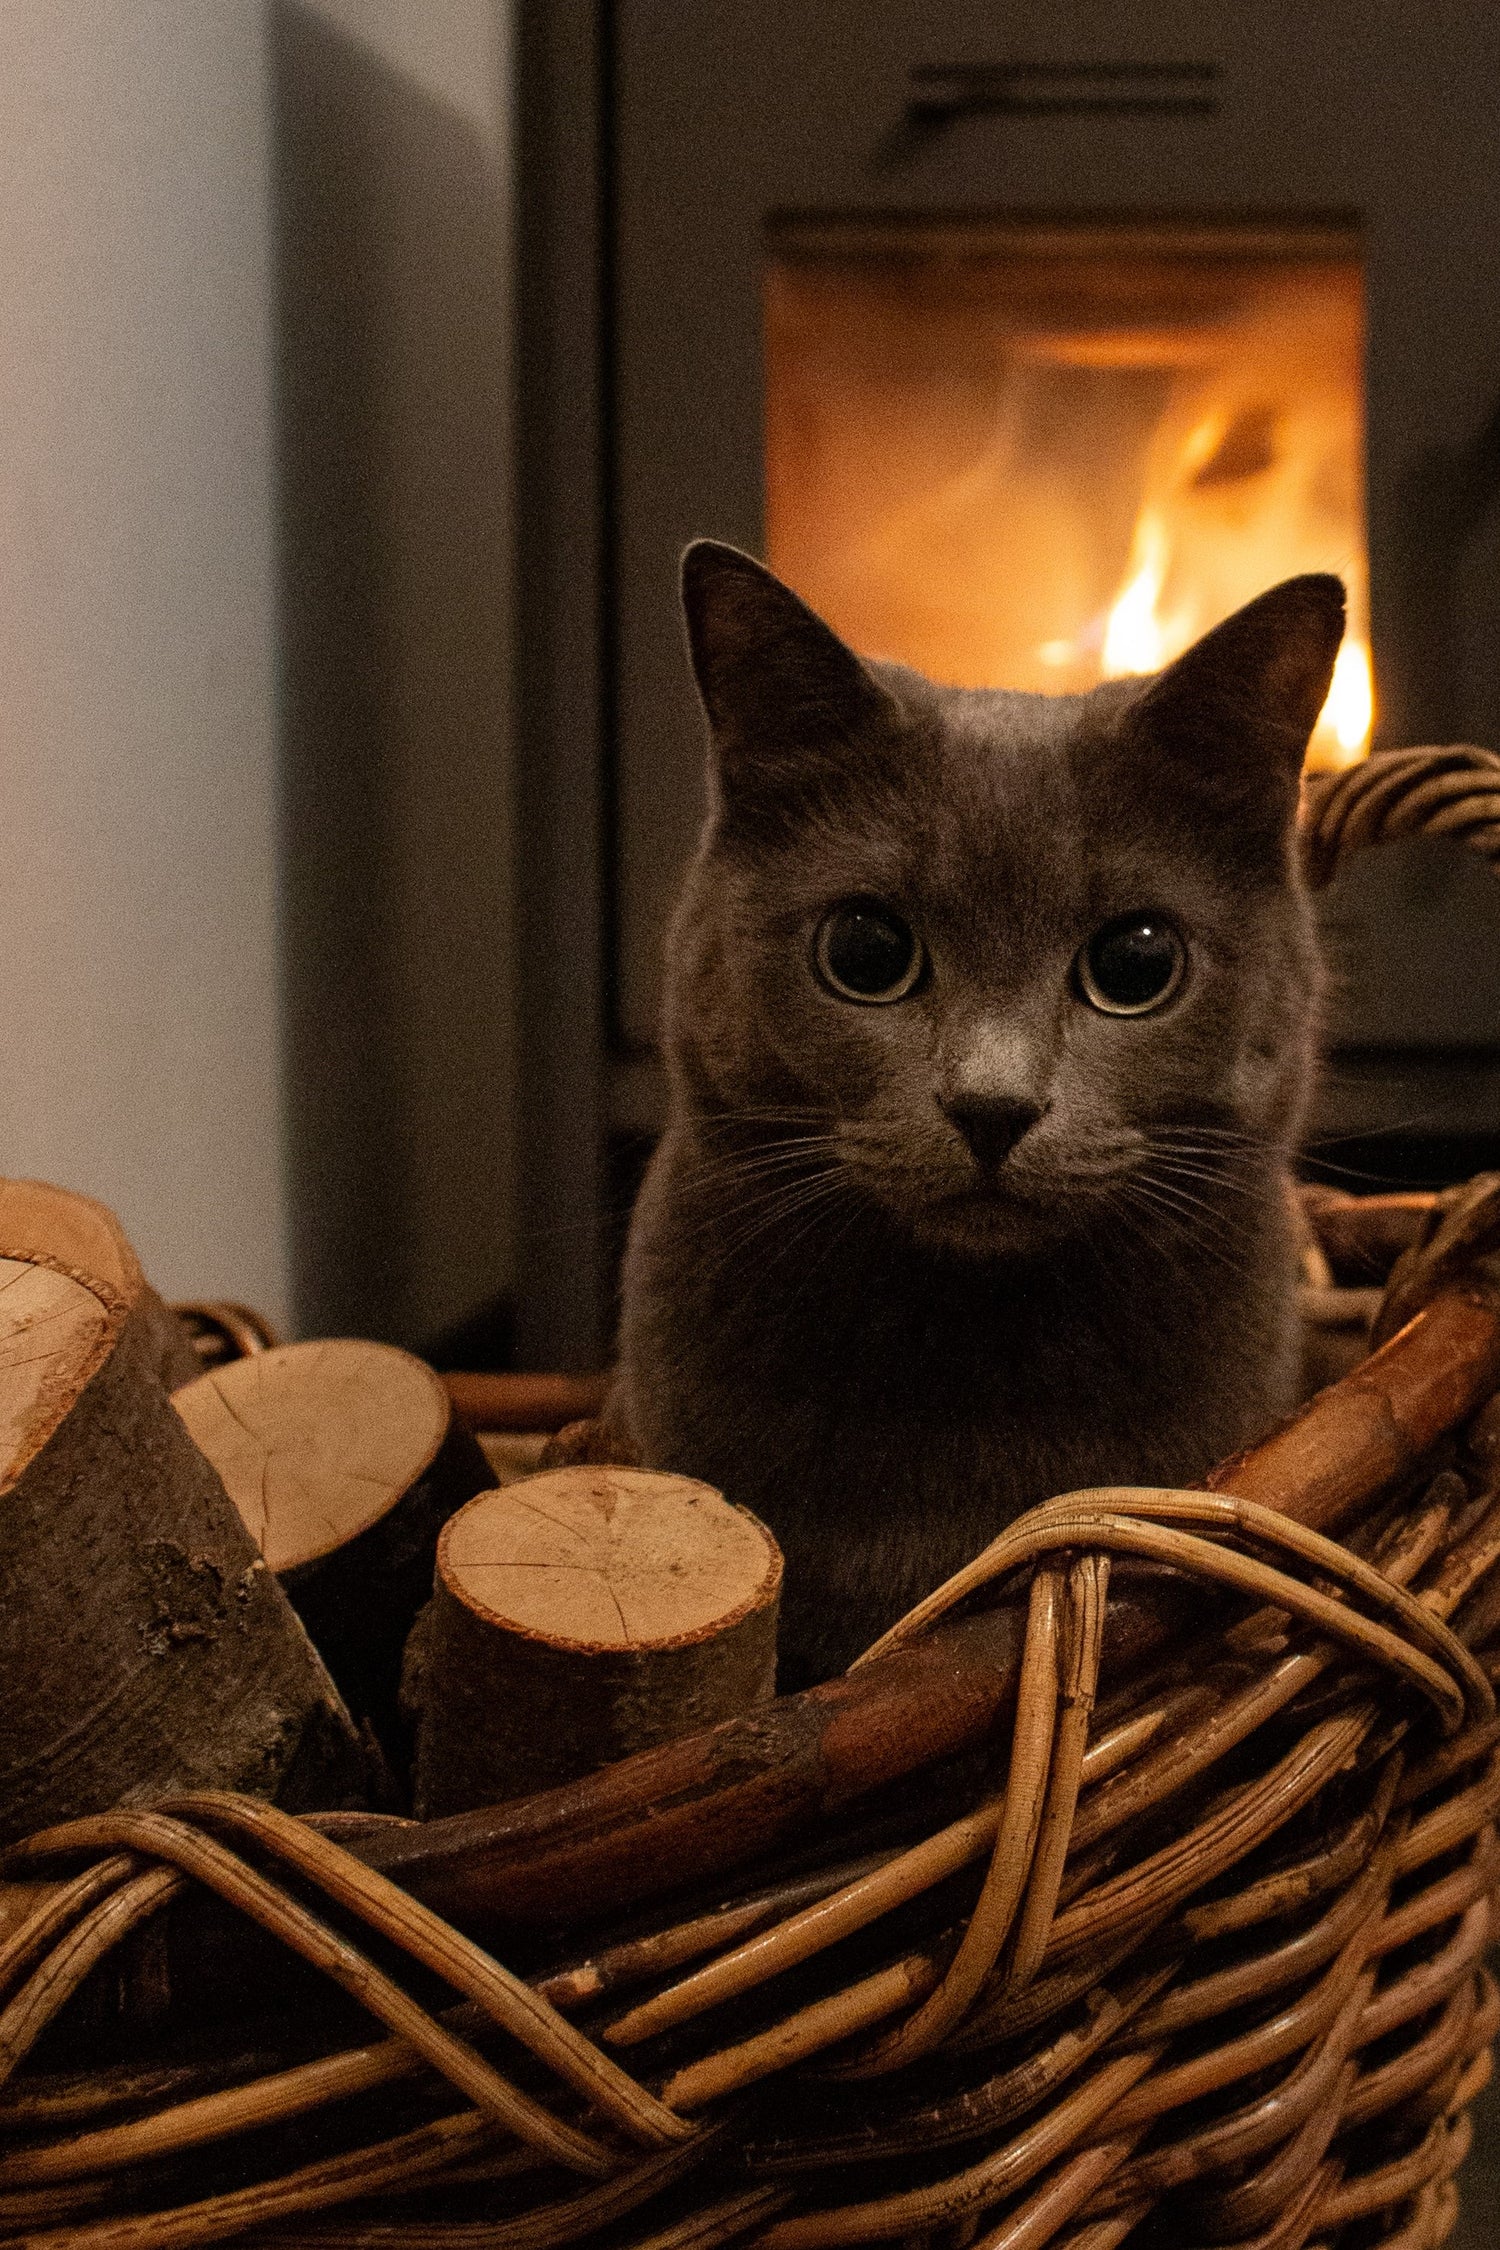 Graue Katze in einem Korb mit Brennholz. Hinter ihr brennt ein Feuer im Ofen.